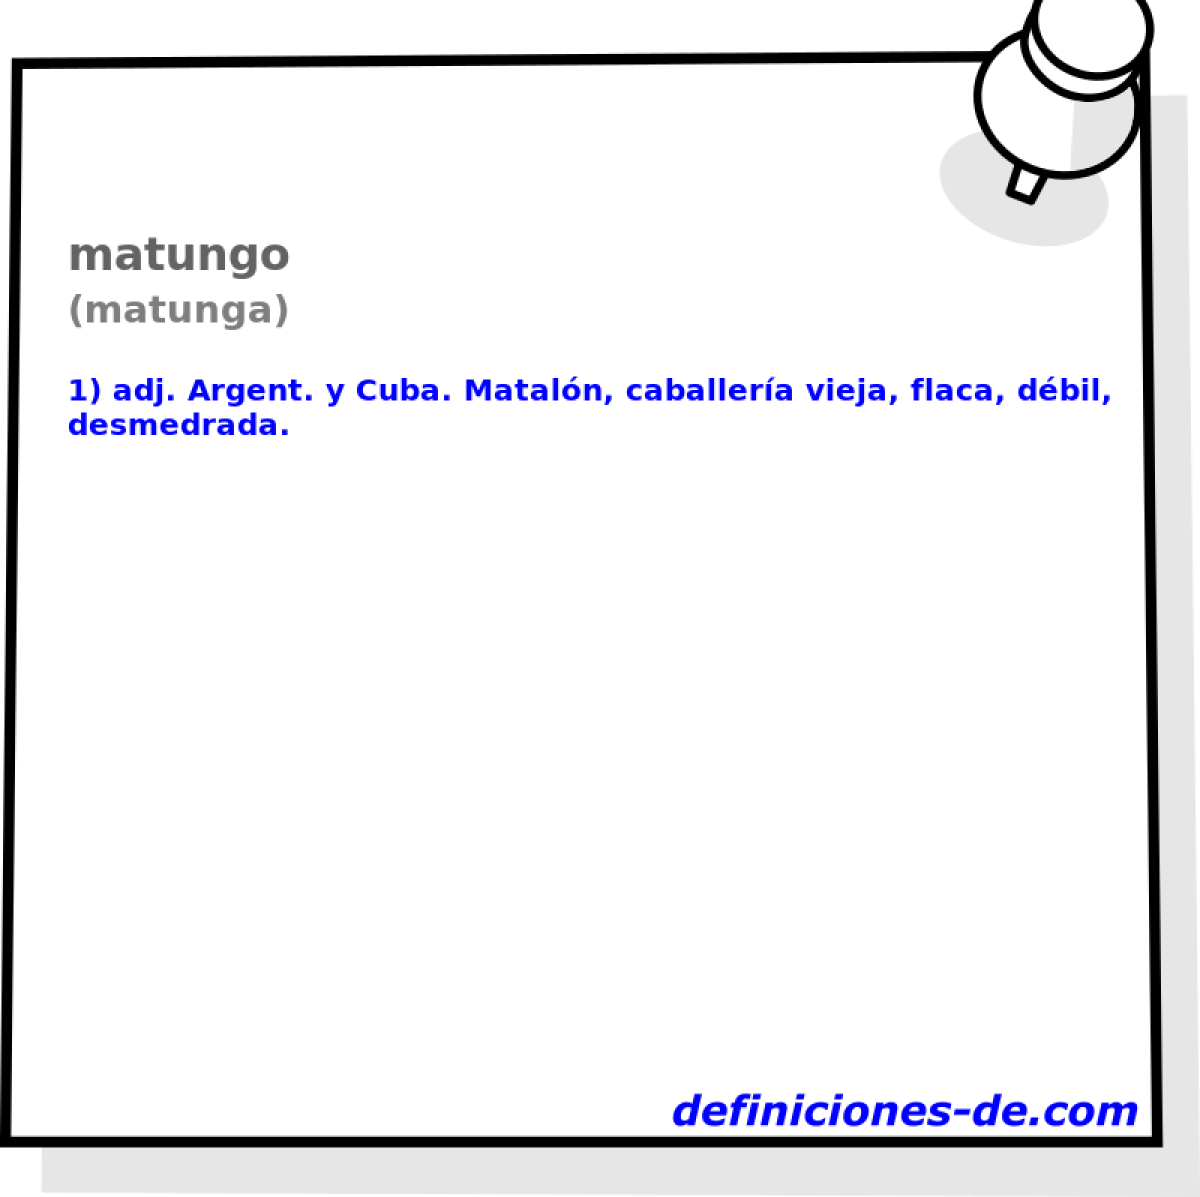 matungo (matunga)